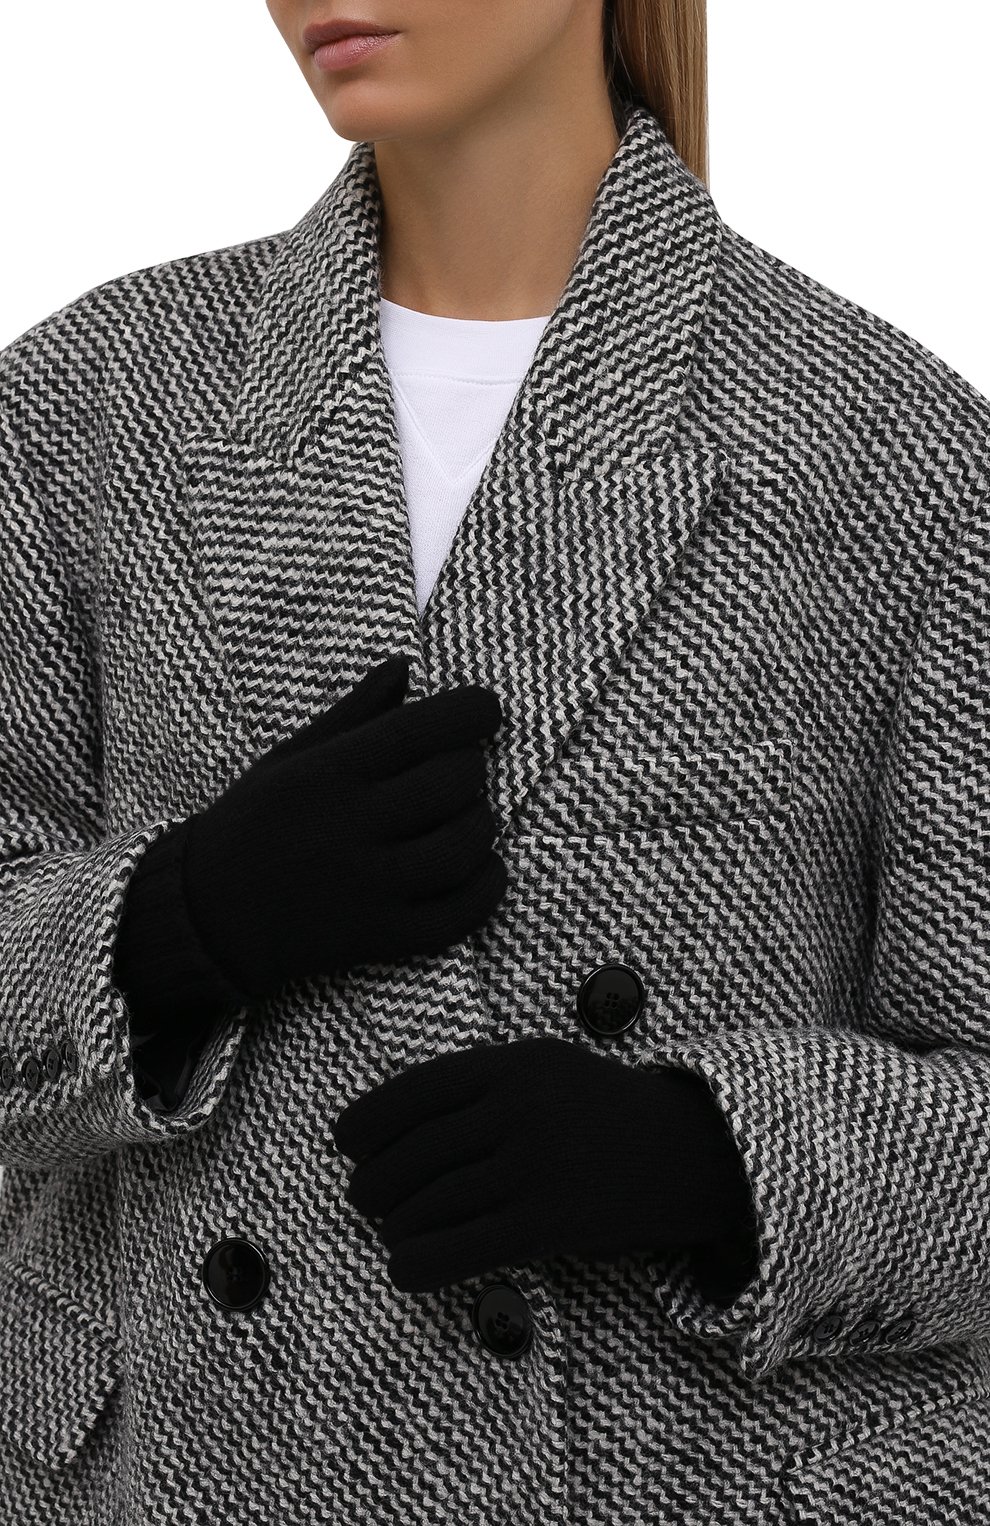 Женские кашемировые перчатки INVERNI черного цвета, арт. 5299 GU | Фото 2 (Материал: Текстиль, Кашемир, Шерсть; Кросс-КТ: Трикотаж)